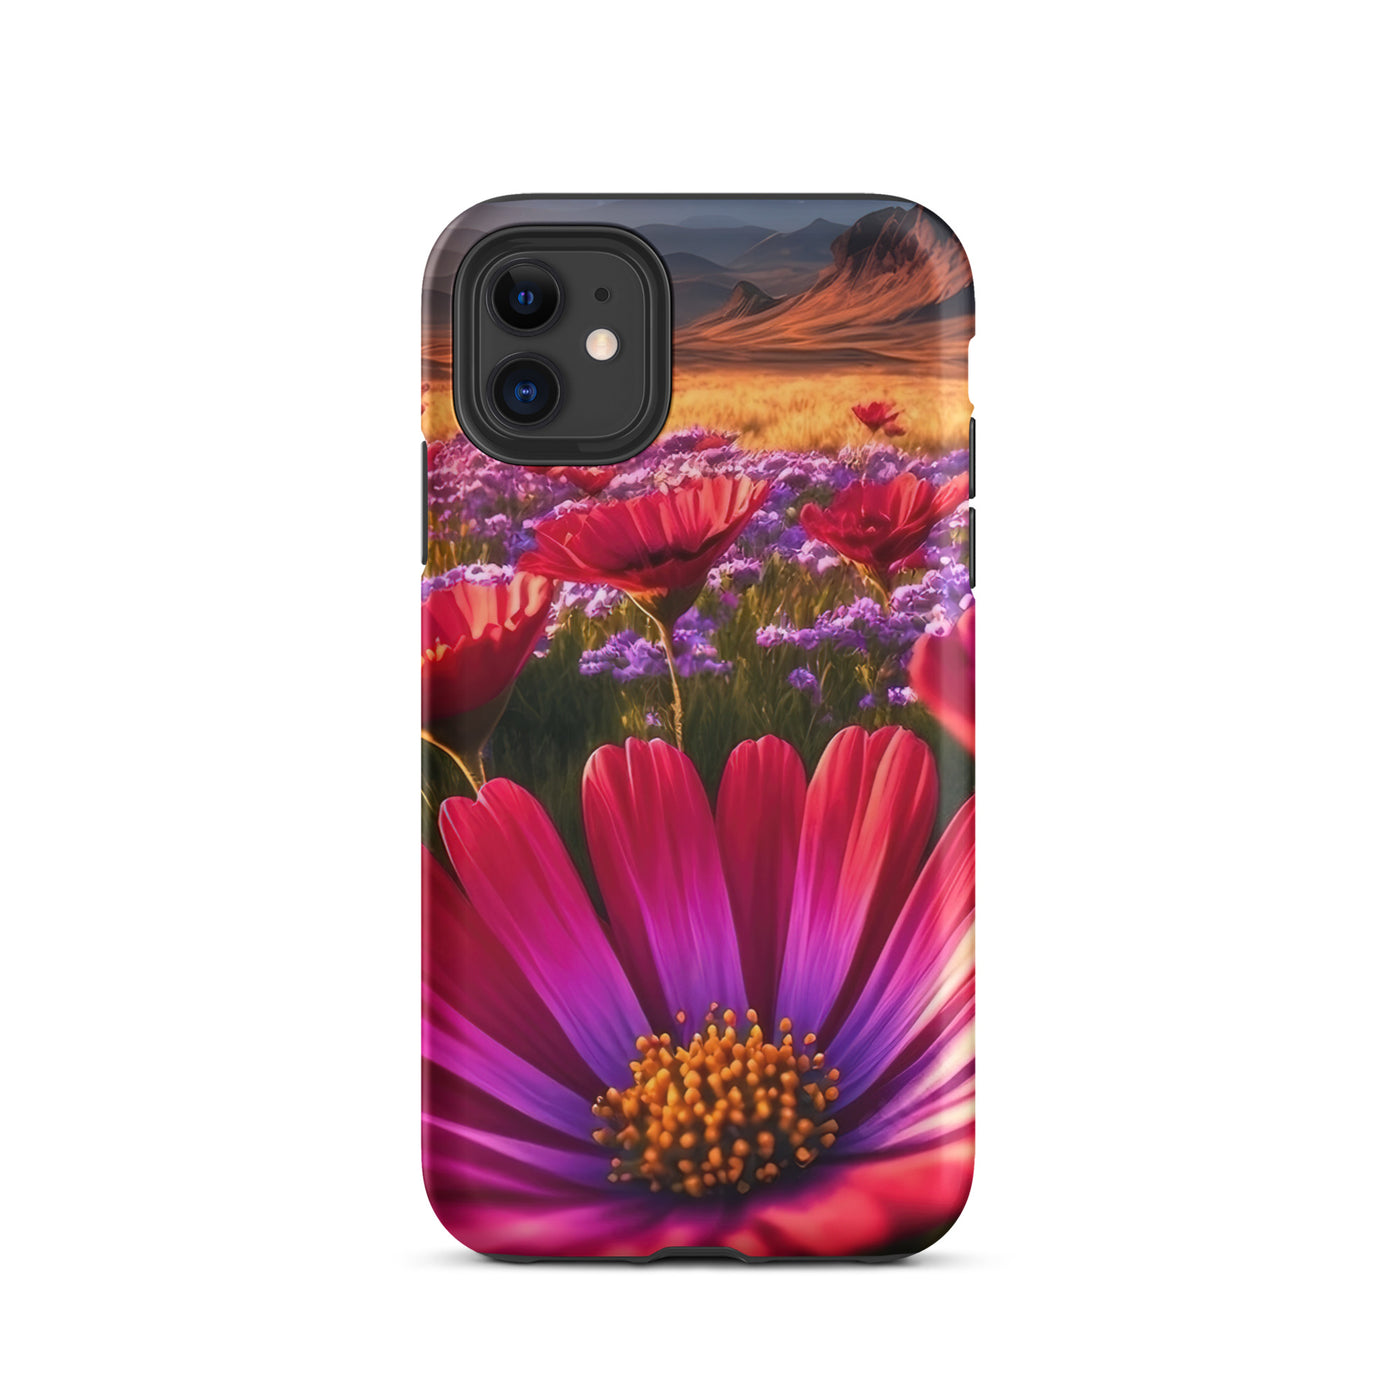 Wünderschöne Blumen und Berge im Hintergrund - iPhone Schutzhülle (robust) berge xxx iPhone 11